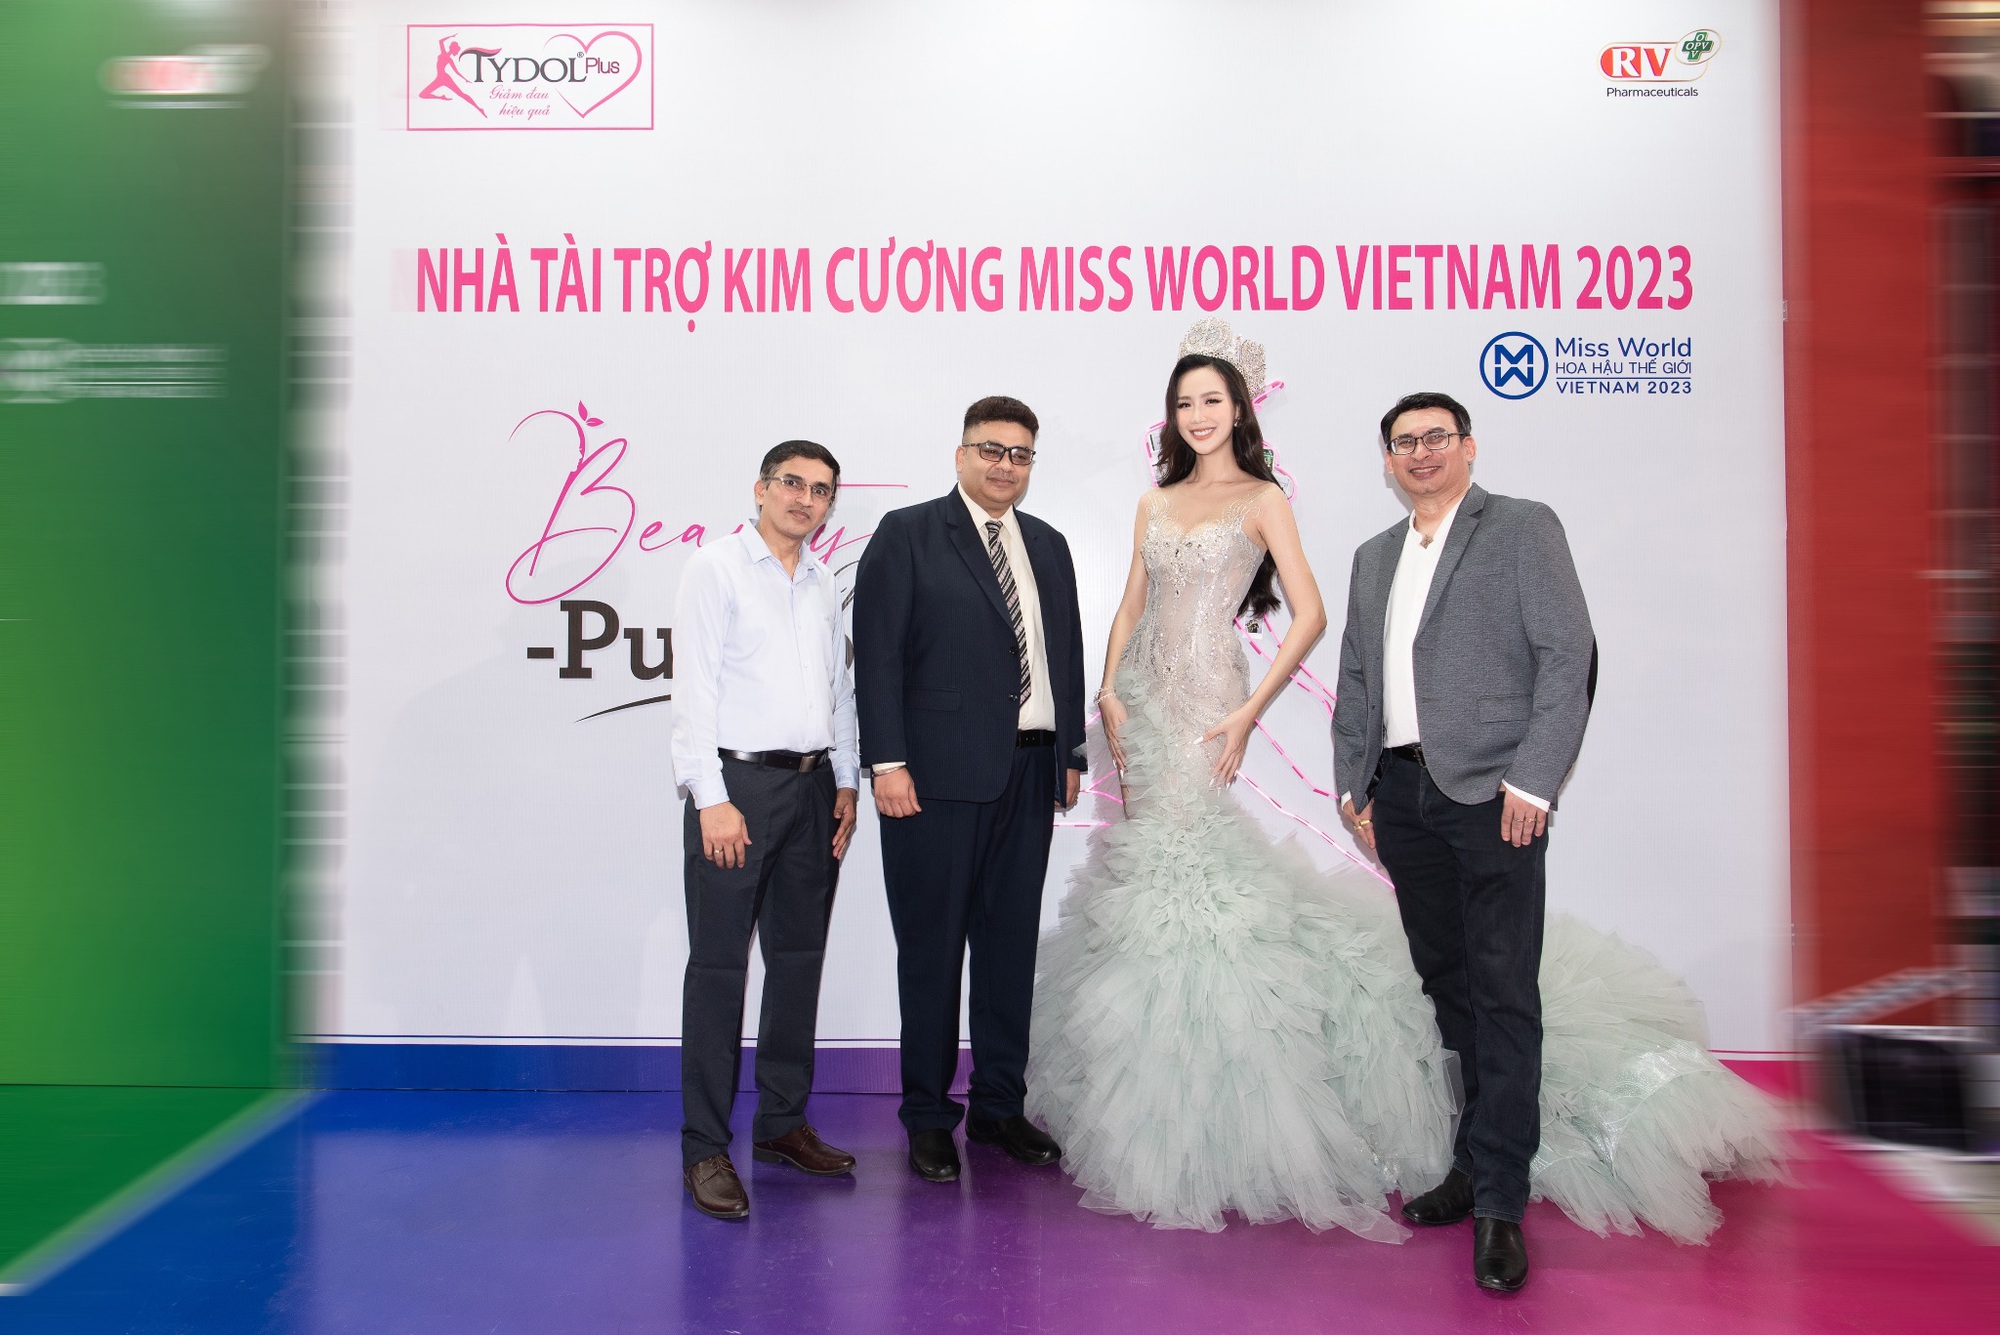 TYDOL Plus trao hoa cho top 5 Người đẹp Du lịch Miss World Vietnam 2023 - Ảnh 1.